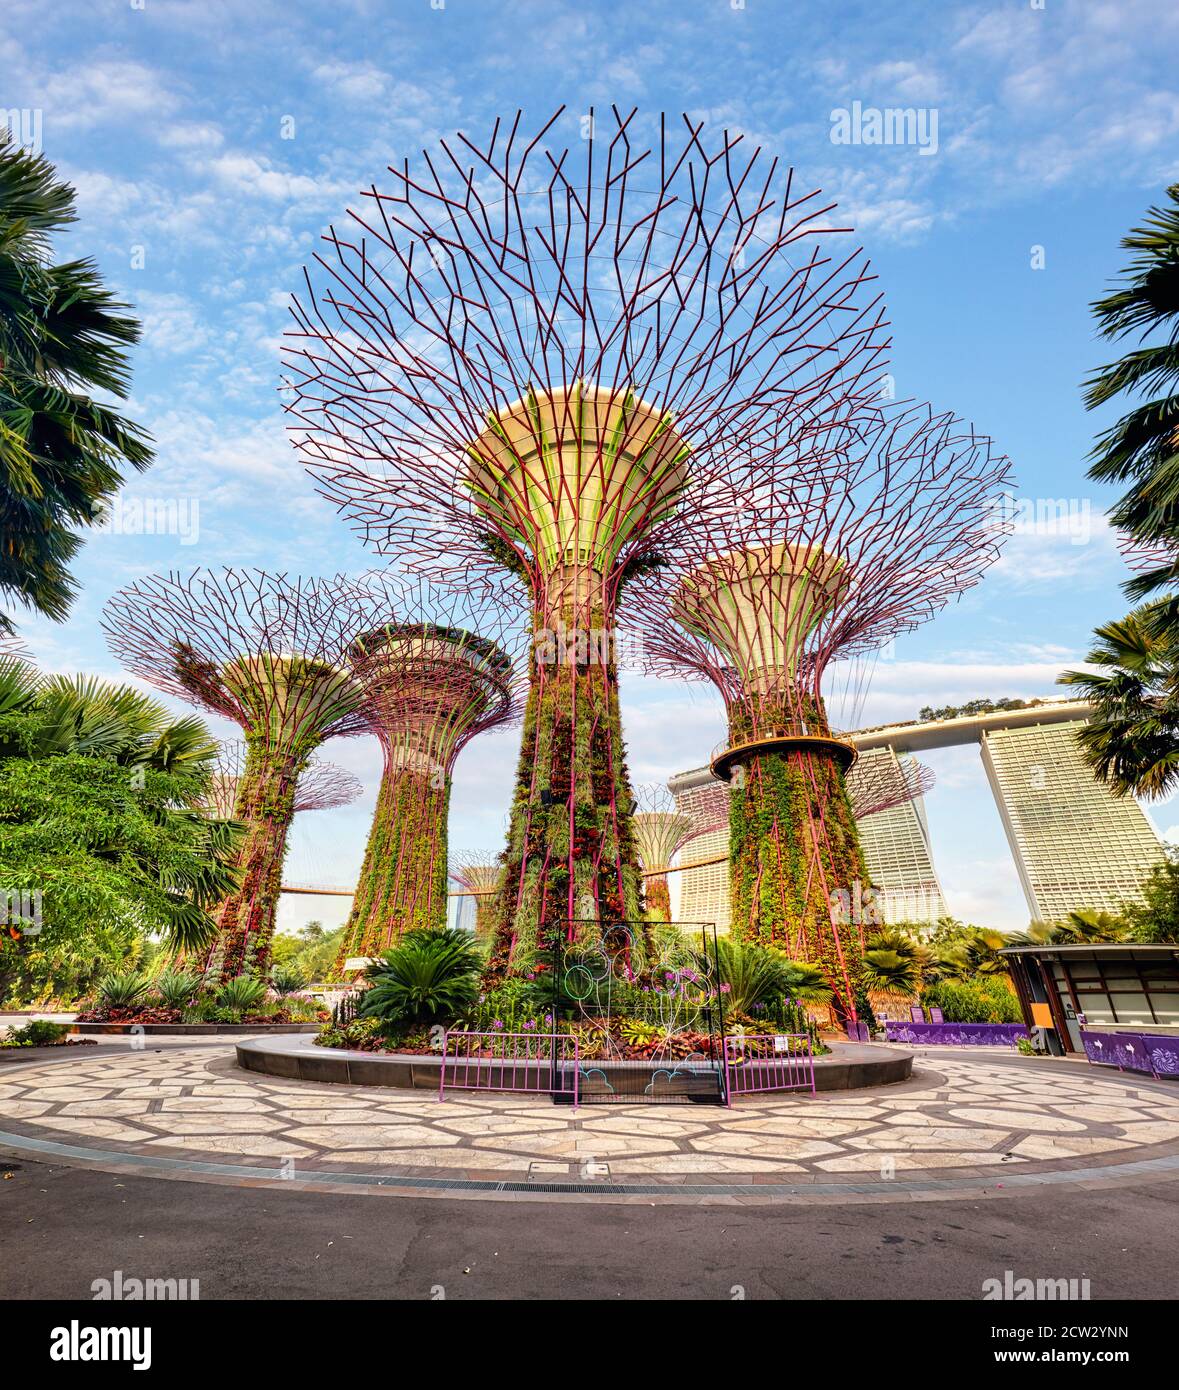 Singapour Supertrees dans le jardin près de la baie à la baie sud de Singapour Banque D'Images